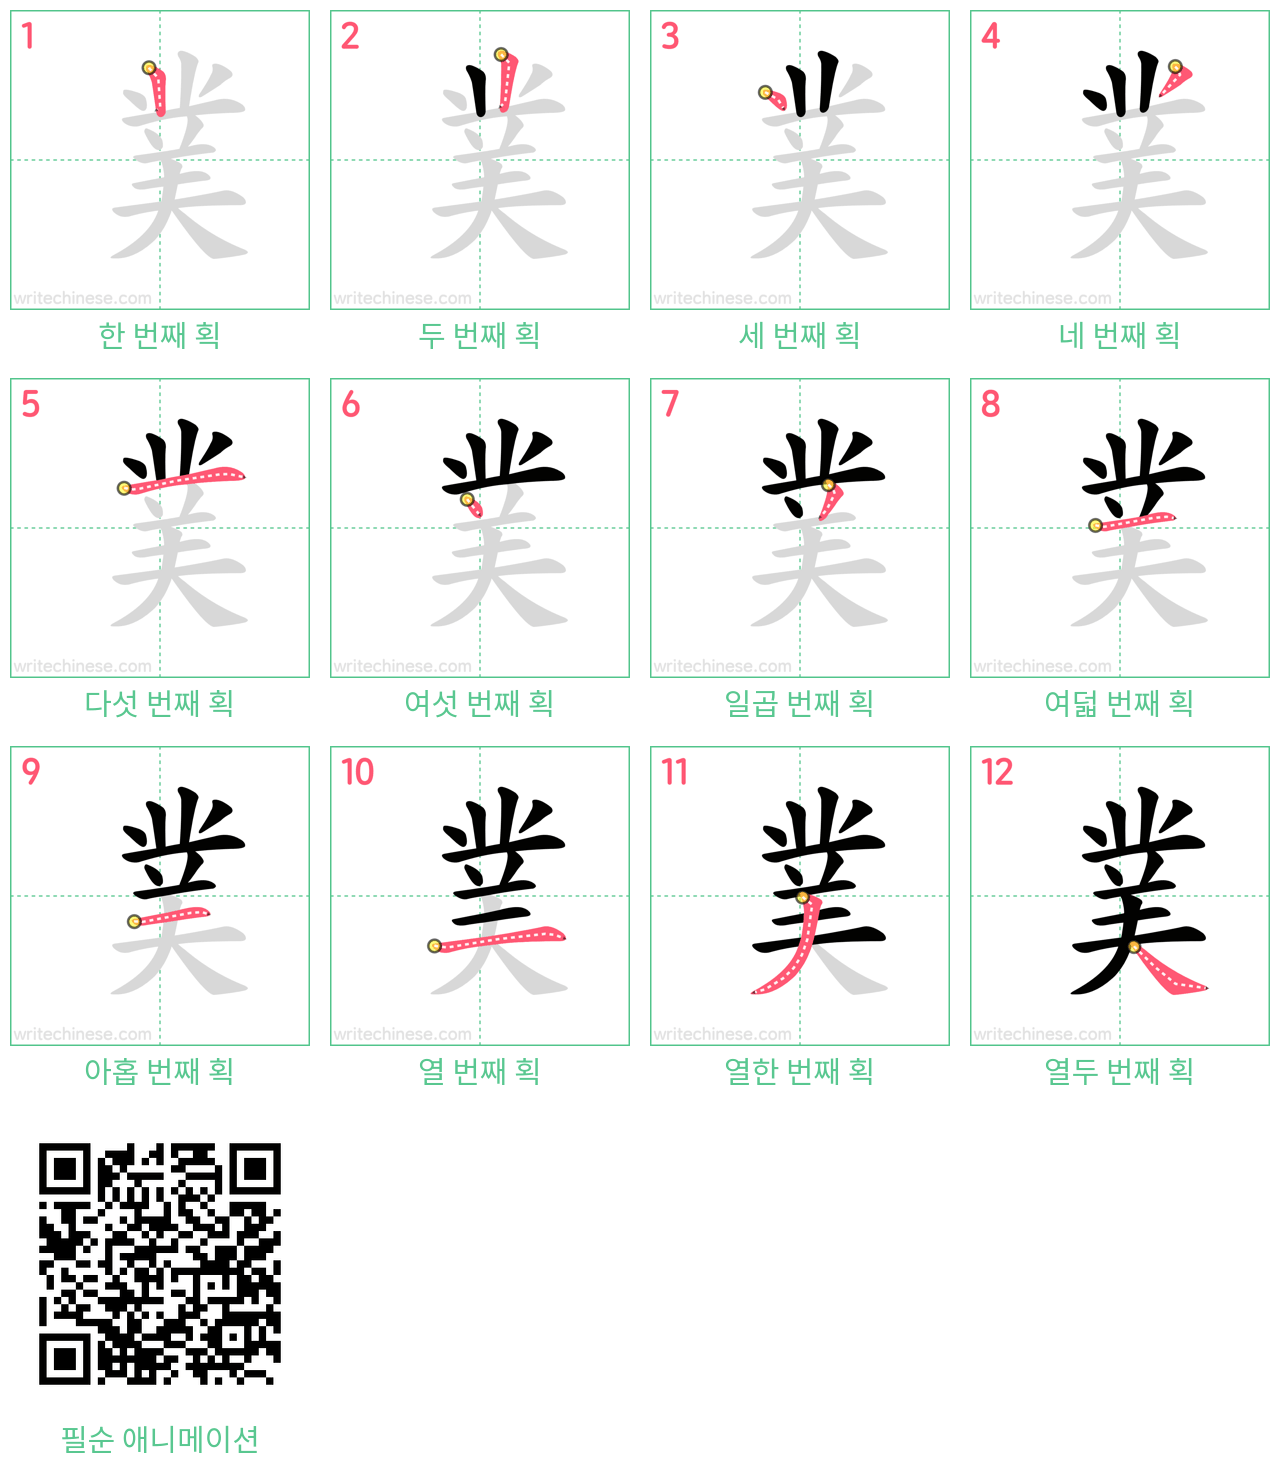 菐 step-by-step stroke order diagrams